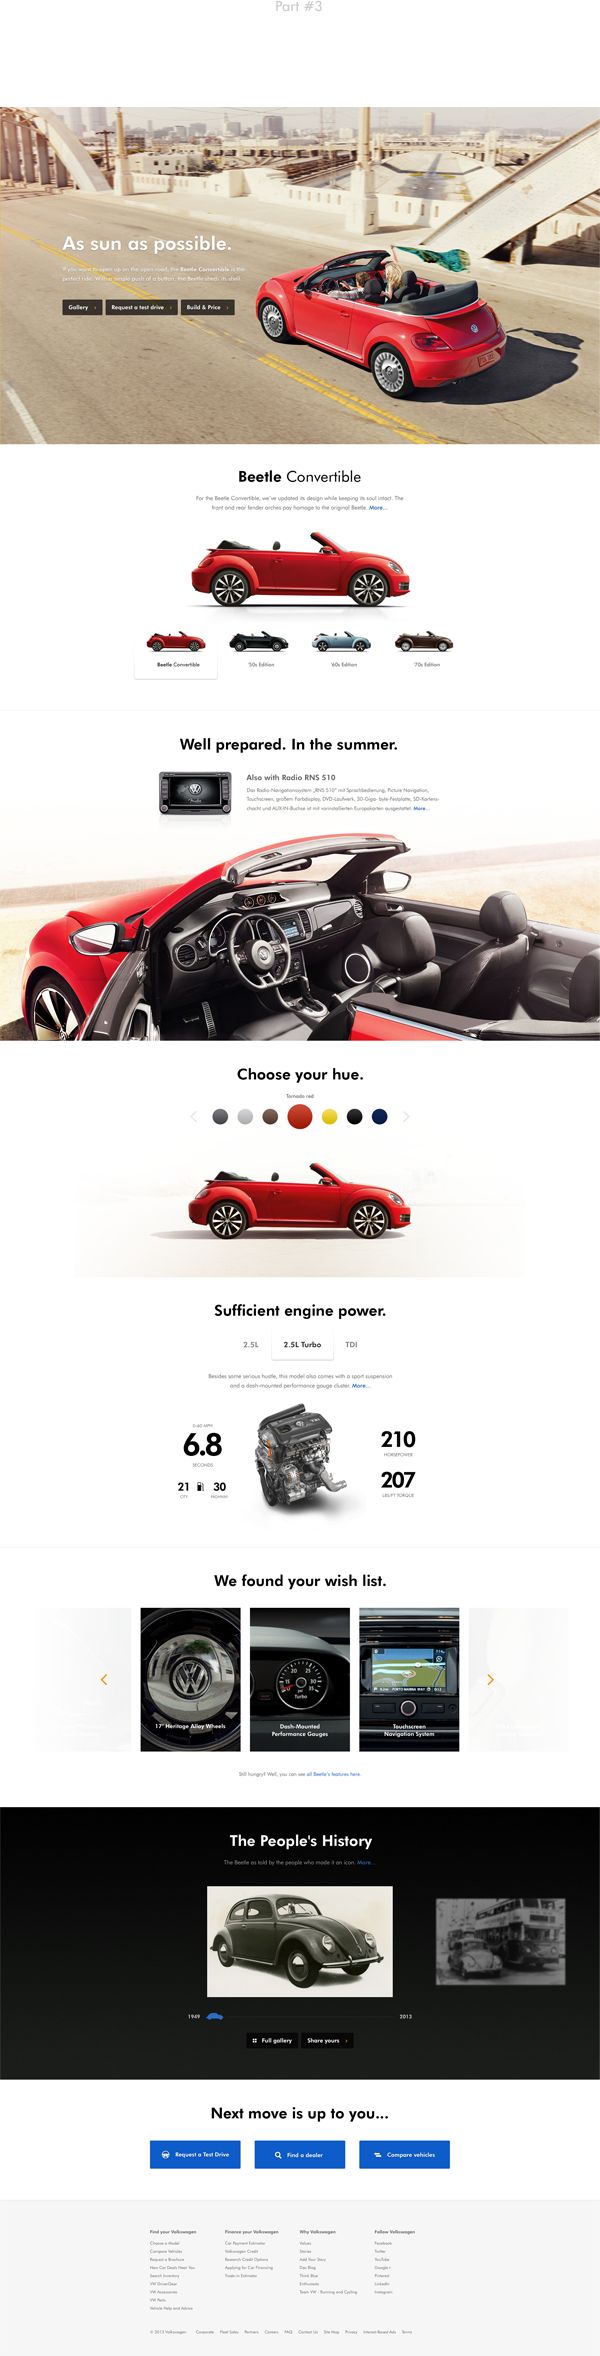 Volkswagen Website Redesign